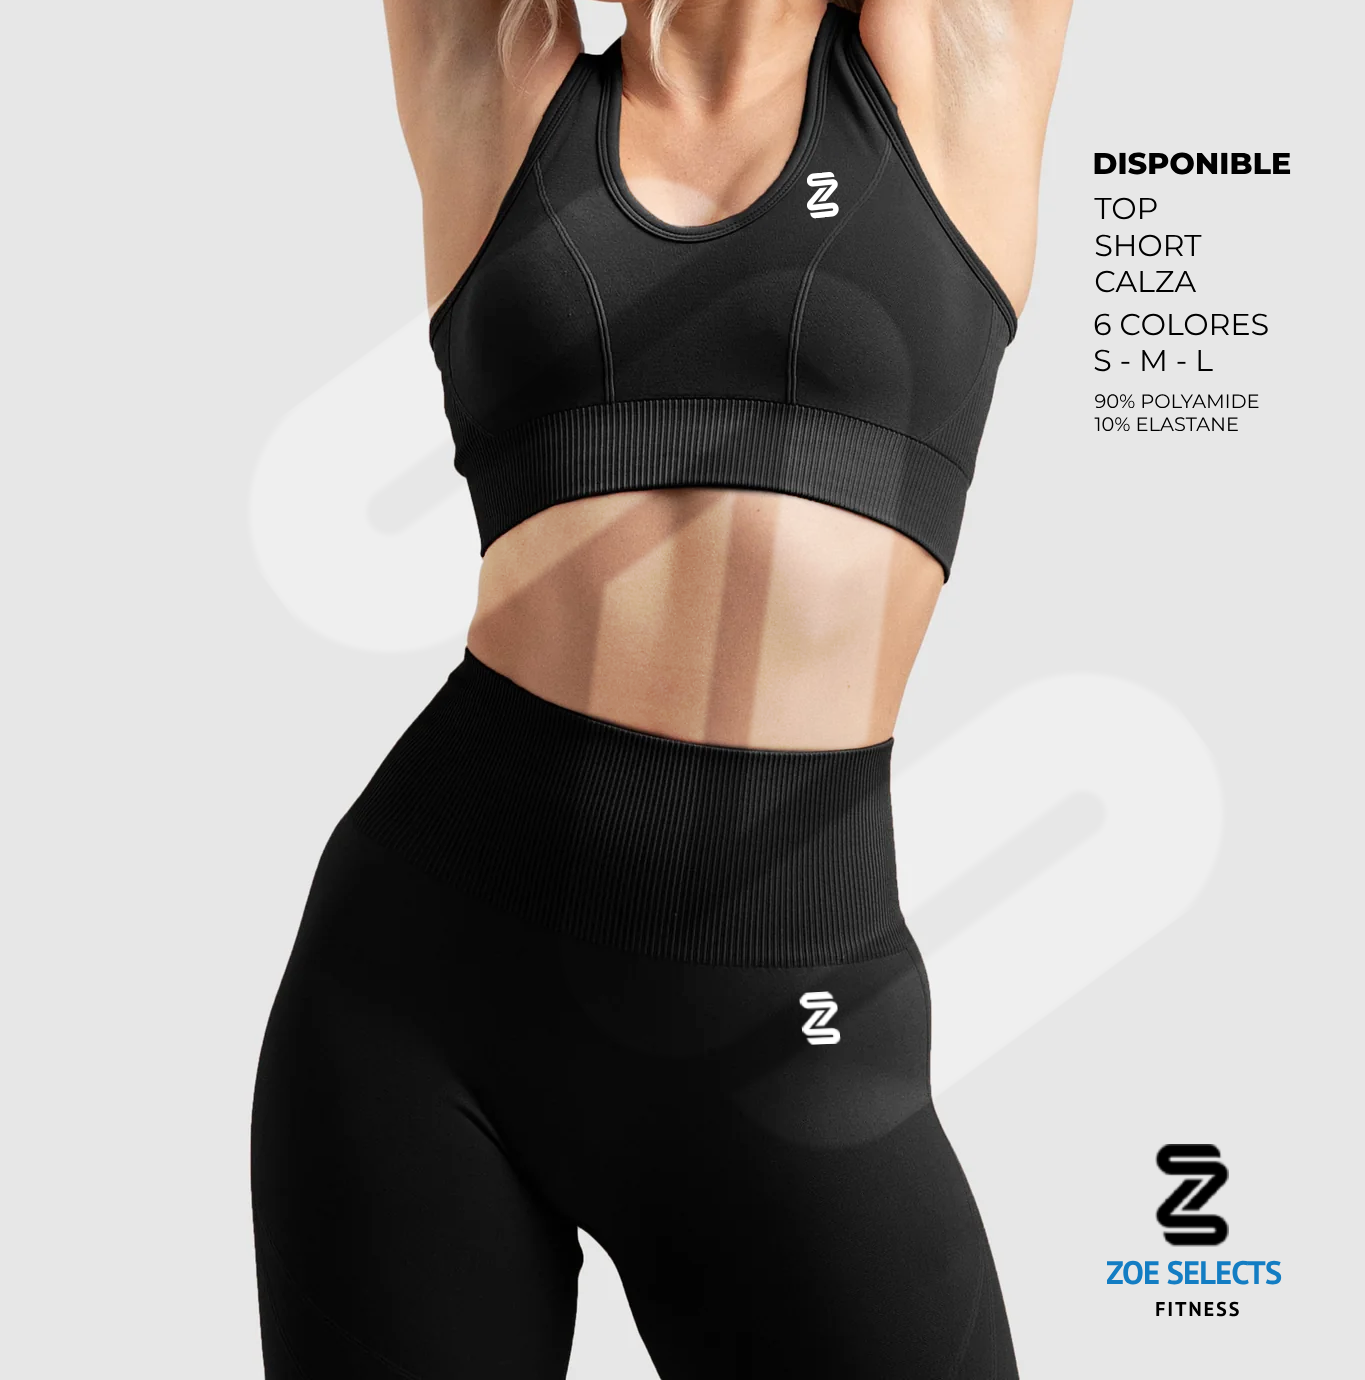 Flex II Shoe – Zoe Selects Fitness